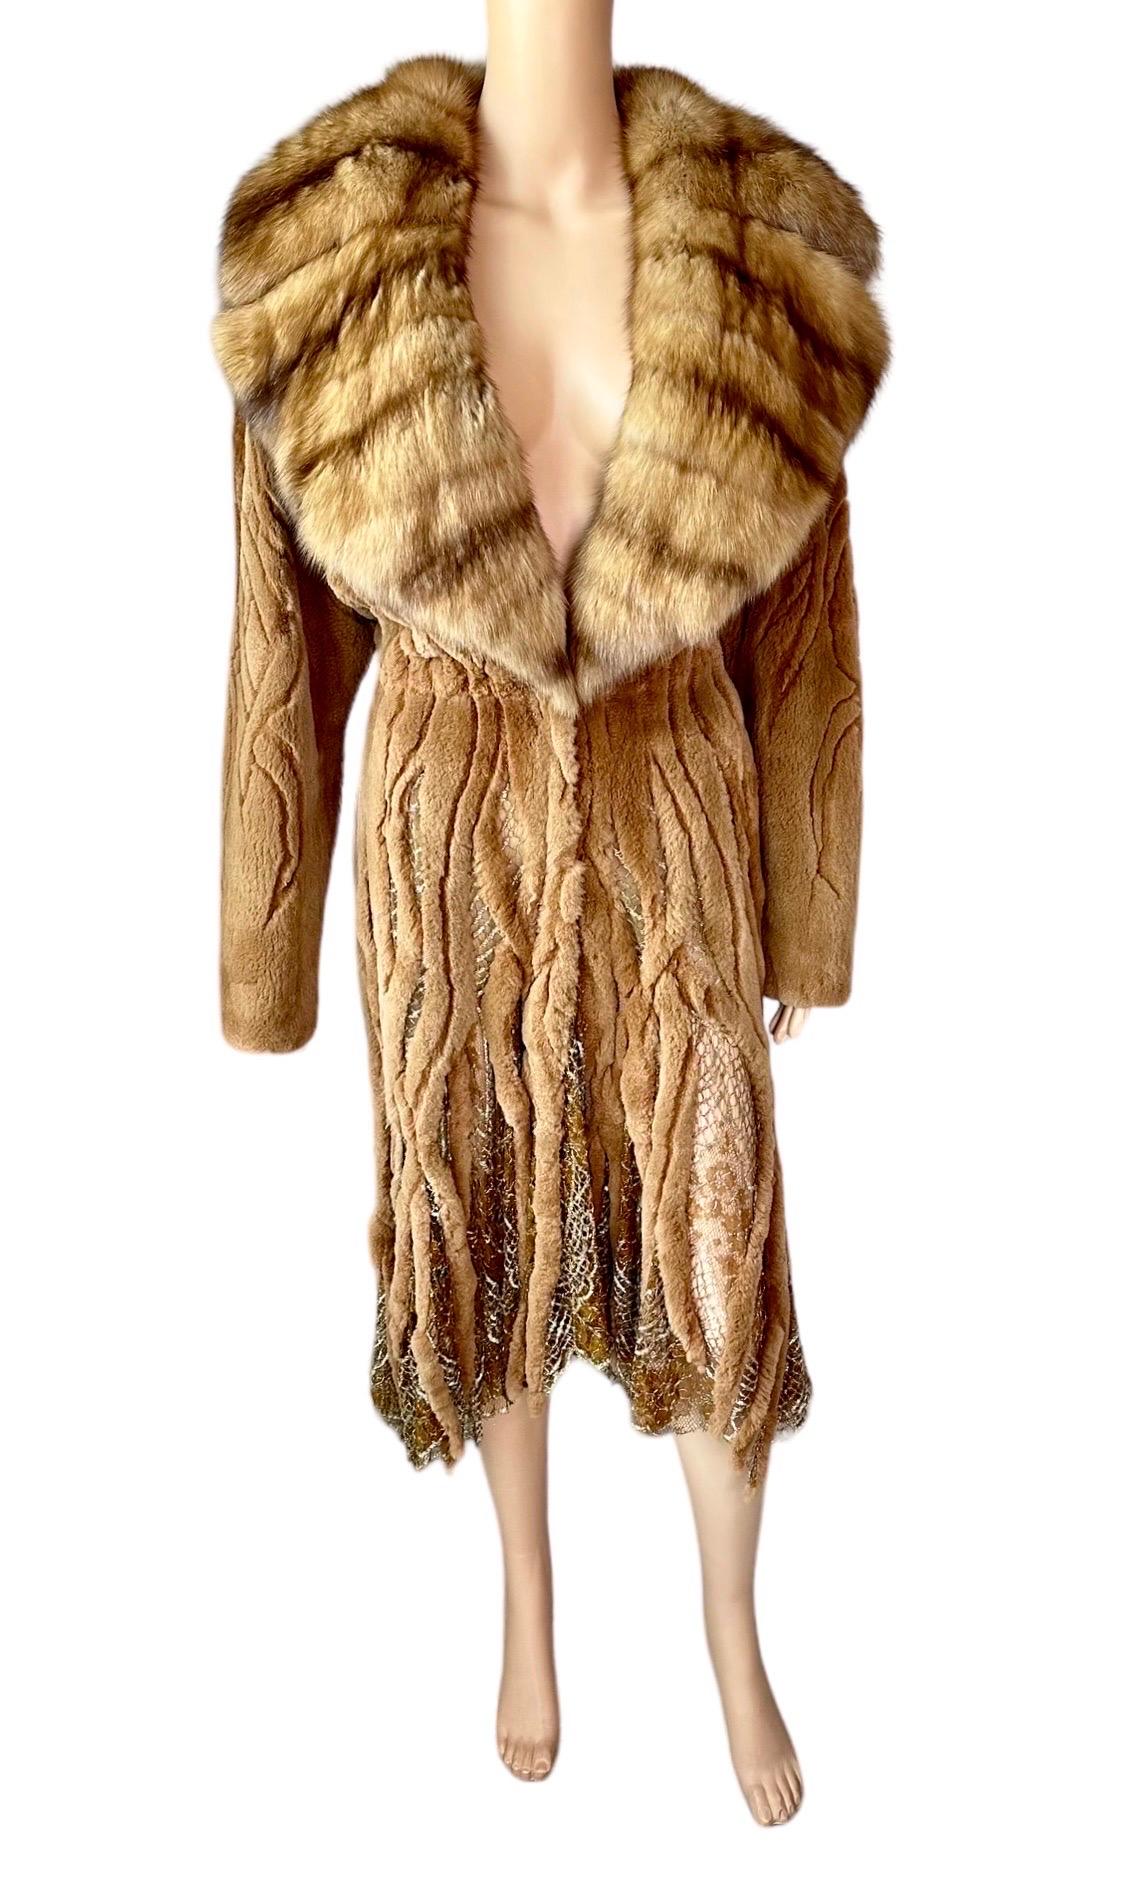 Atelier Gianni Versace c.1996 Fur Cutout Sheer Lace Mesh Panels Jacket Coat For Sale 6